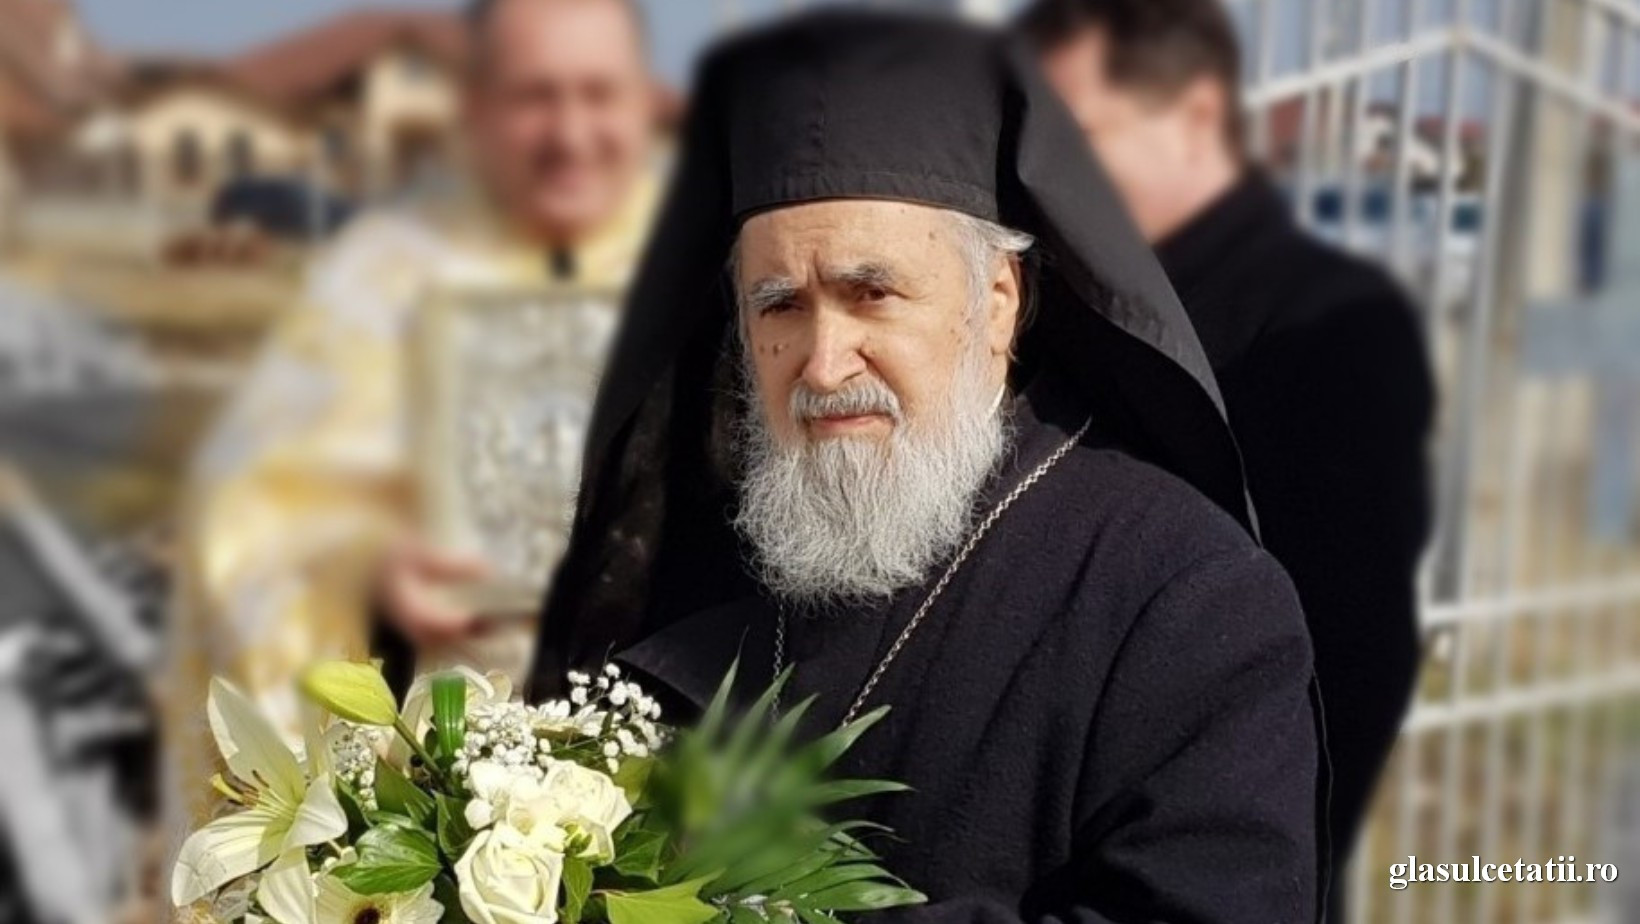 Sărbătoare-n cetate! ÎPS Părinte Timotei sărbătorește astăzi 39 de ani de slujire arhierească la Arad